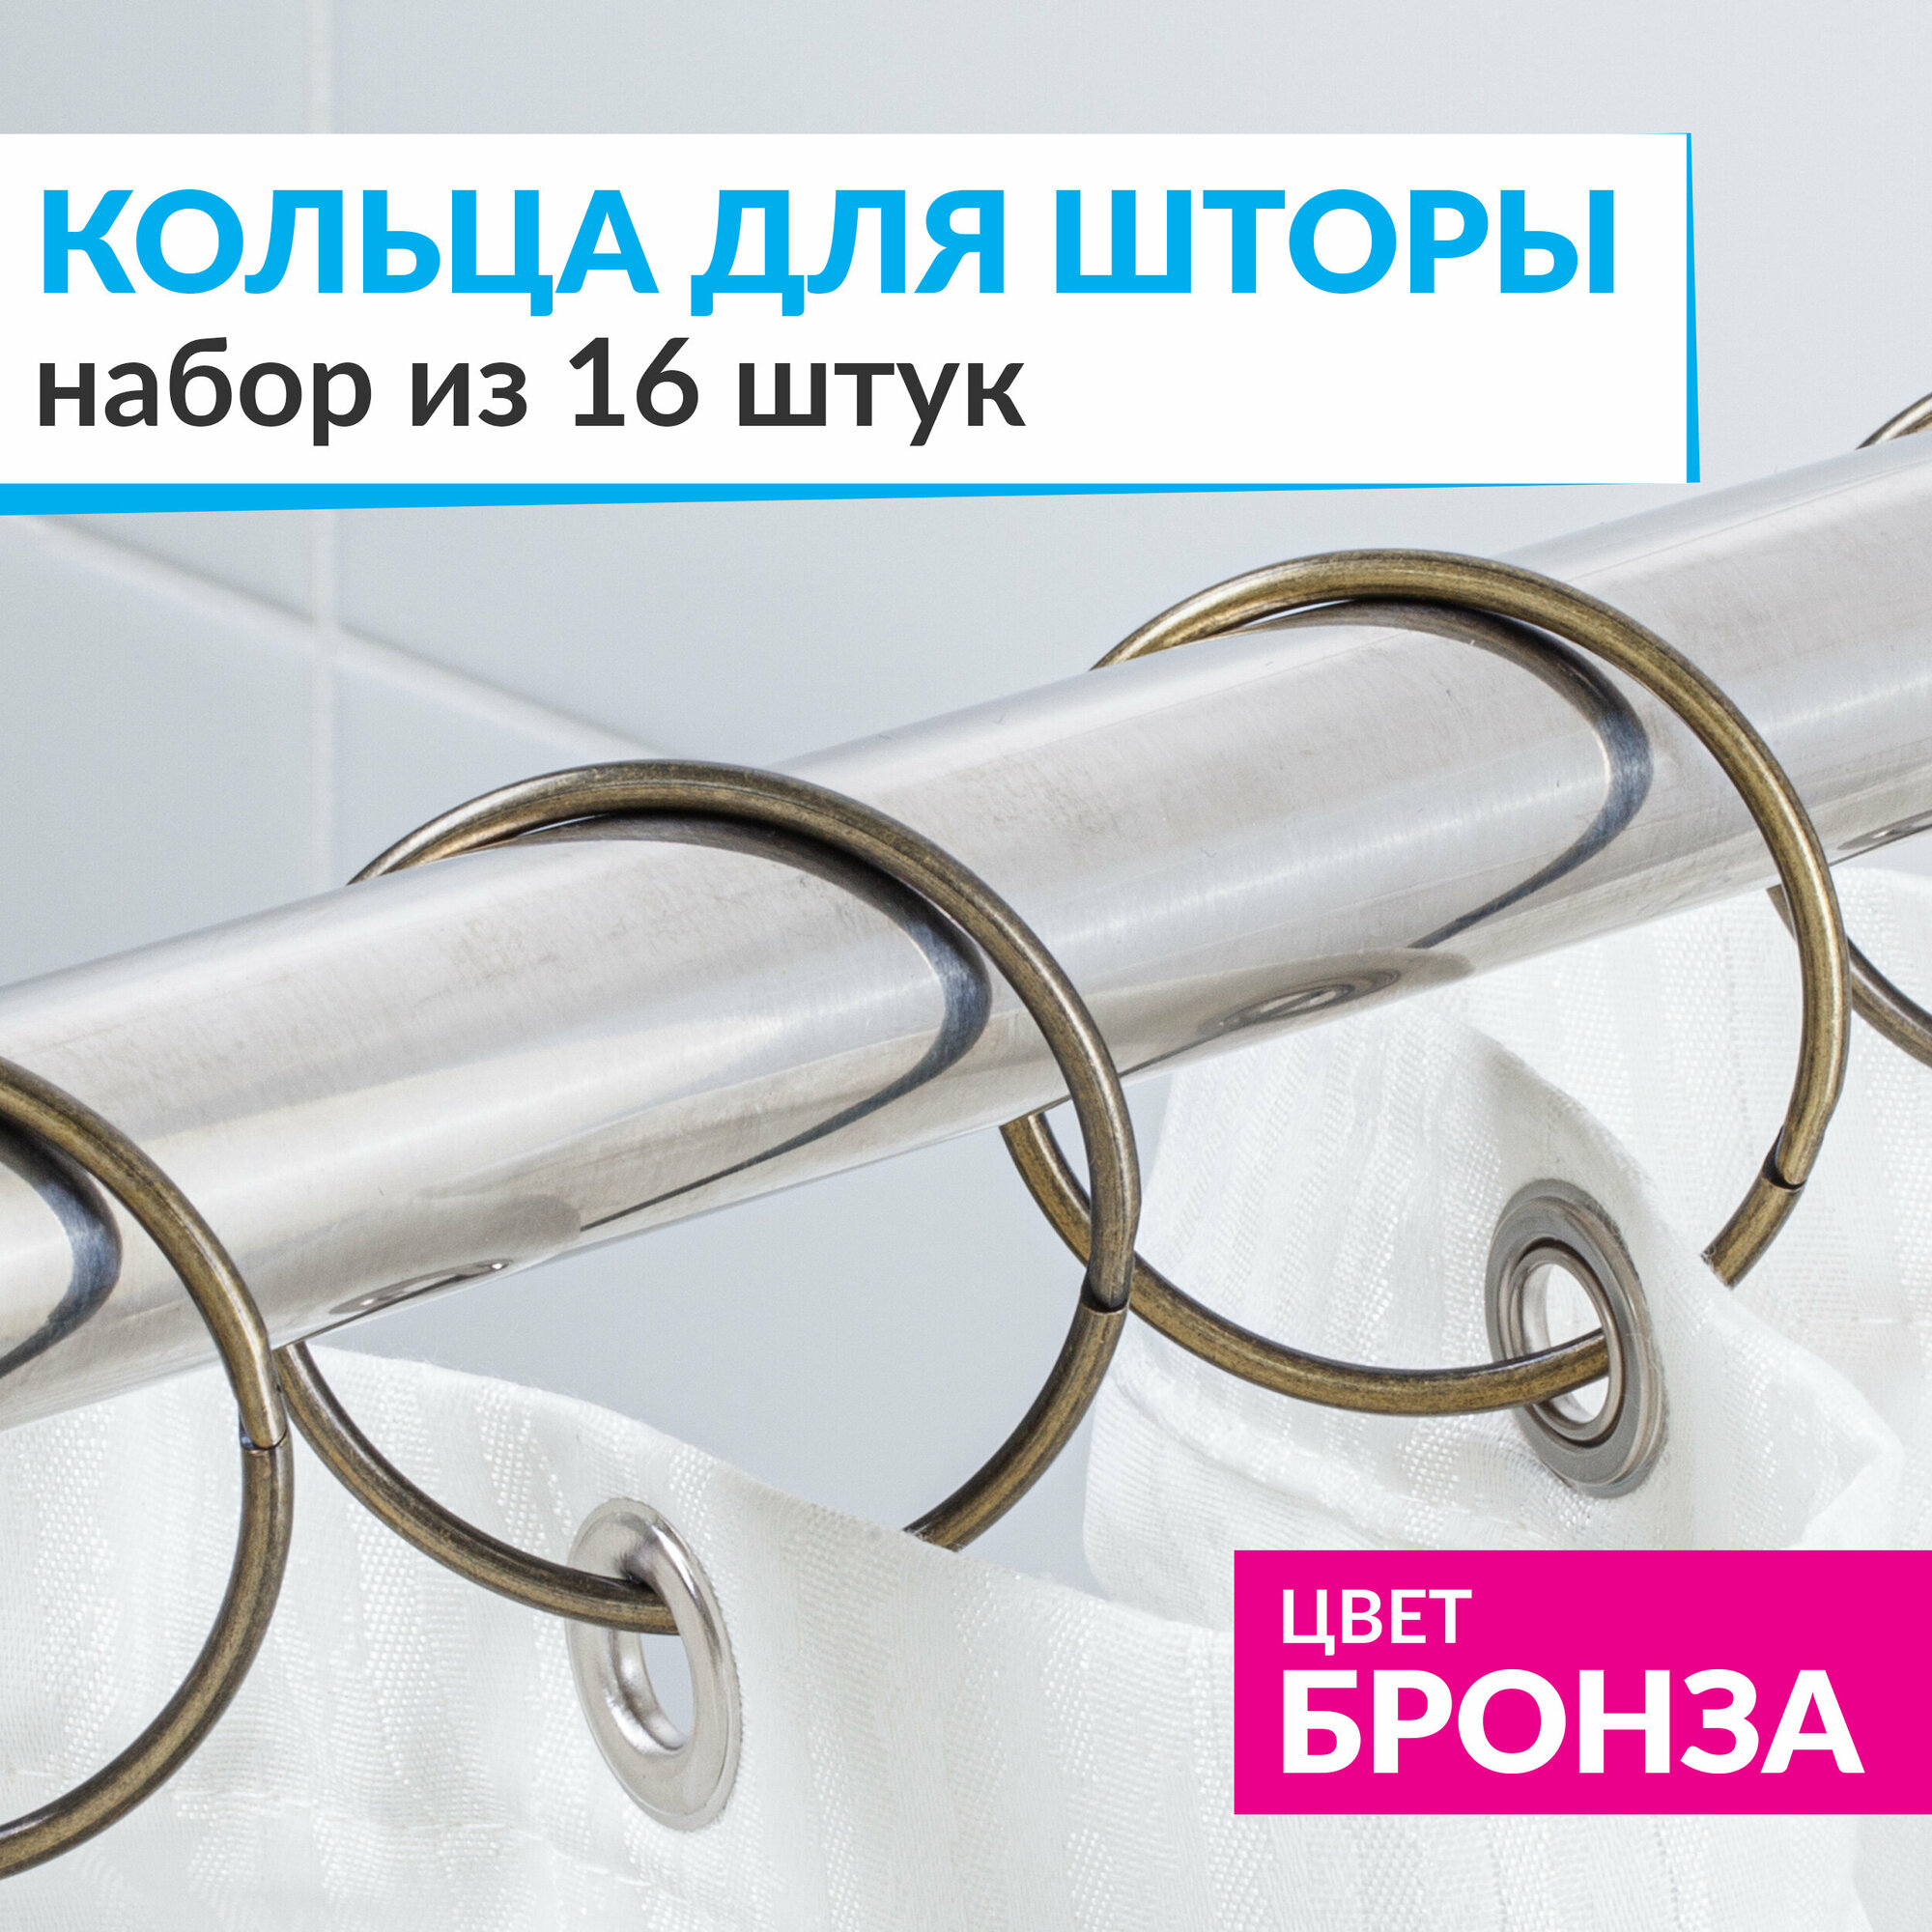 Кольца для шторы в ванную комнату для карниза бронзовые / металлические держатели для штор и занавесок 16 шт.